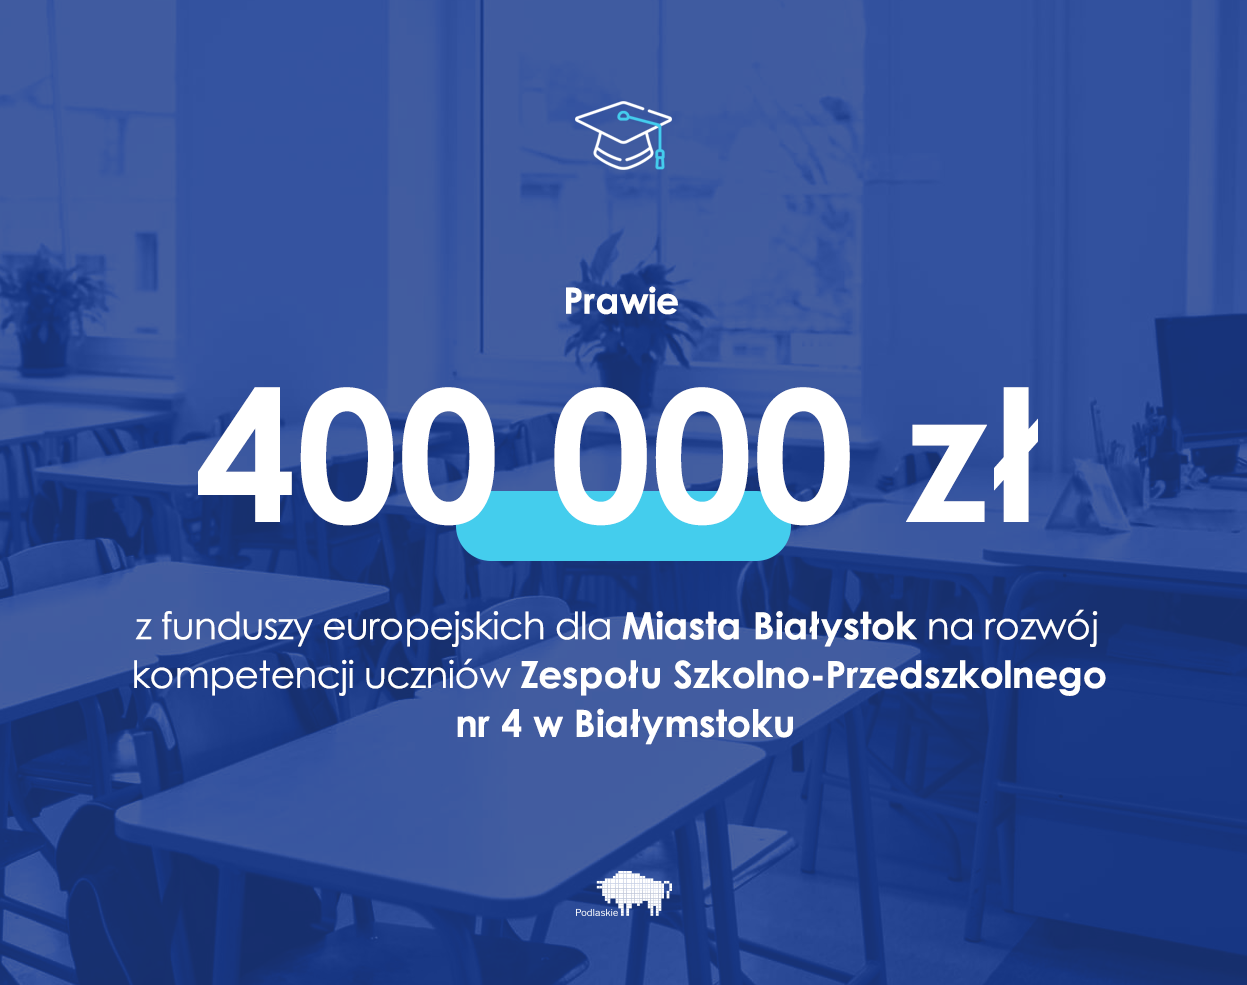 Grafika z napisem: prawie 400 000 zł z funduszy europejskich dla Miasta Białystok na rozwój kompetencji uczniów Zespołu Szkolno-Przedszkolnego nr 4 w Białymstoku.